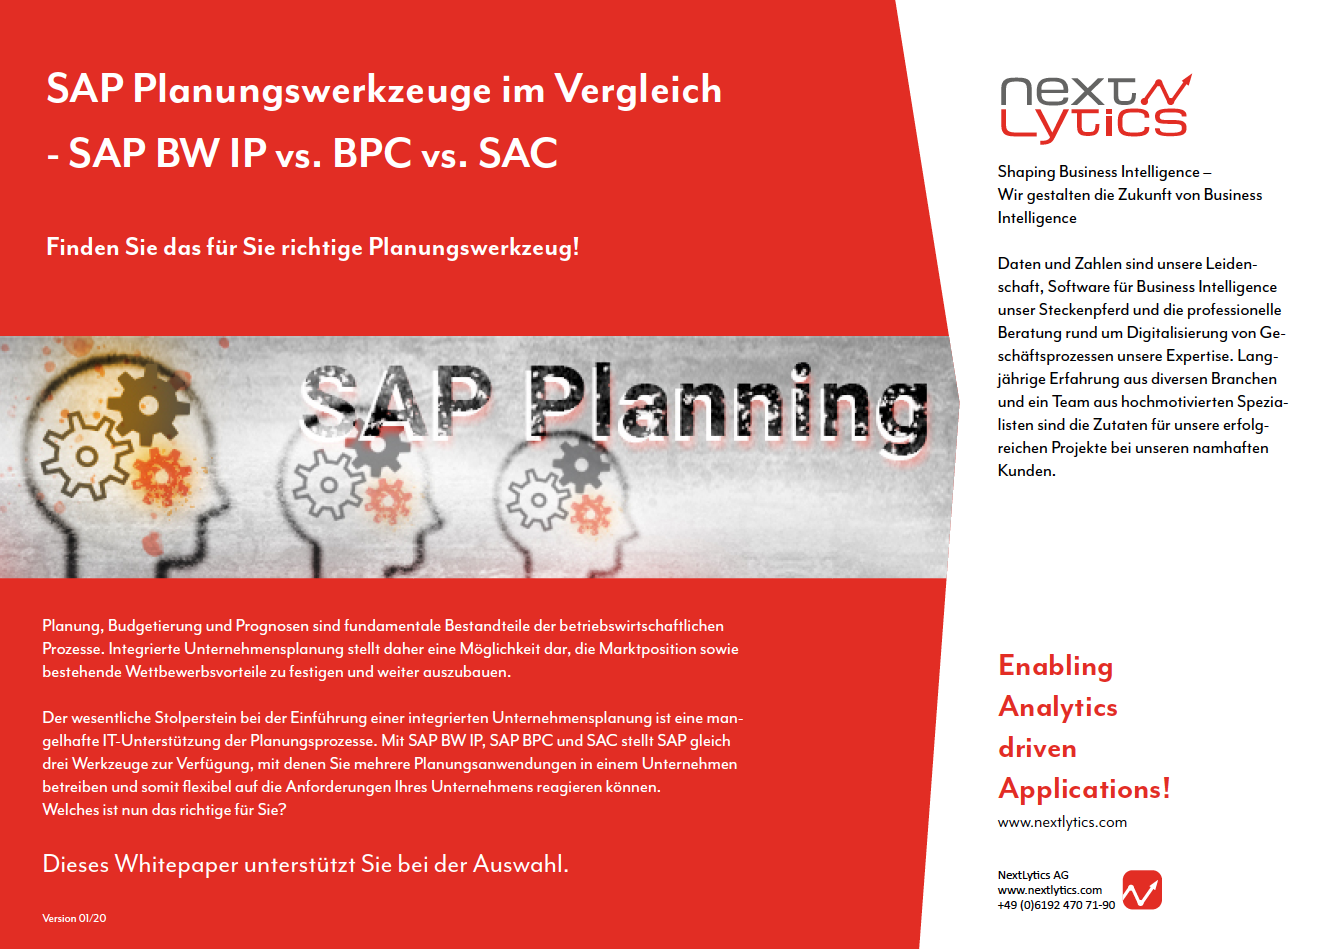 SAP-Planungswerkzeuge im Vergleich: SAP BW IP, BPC und SAC